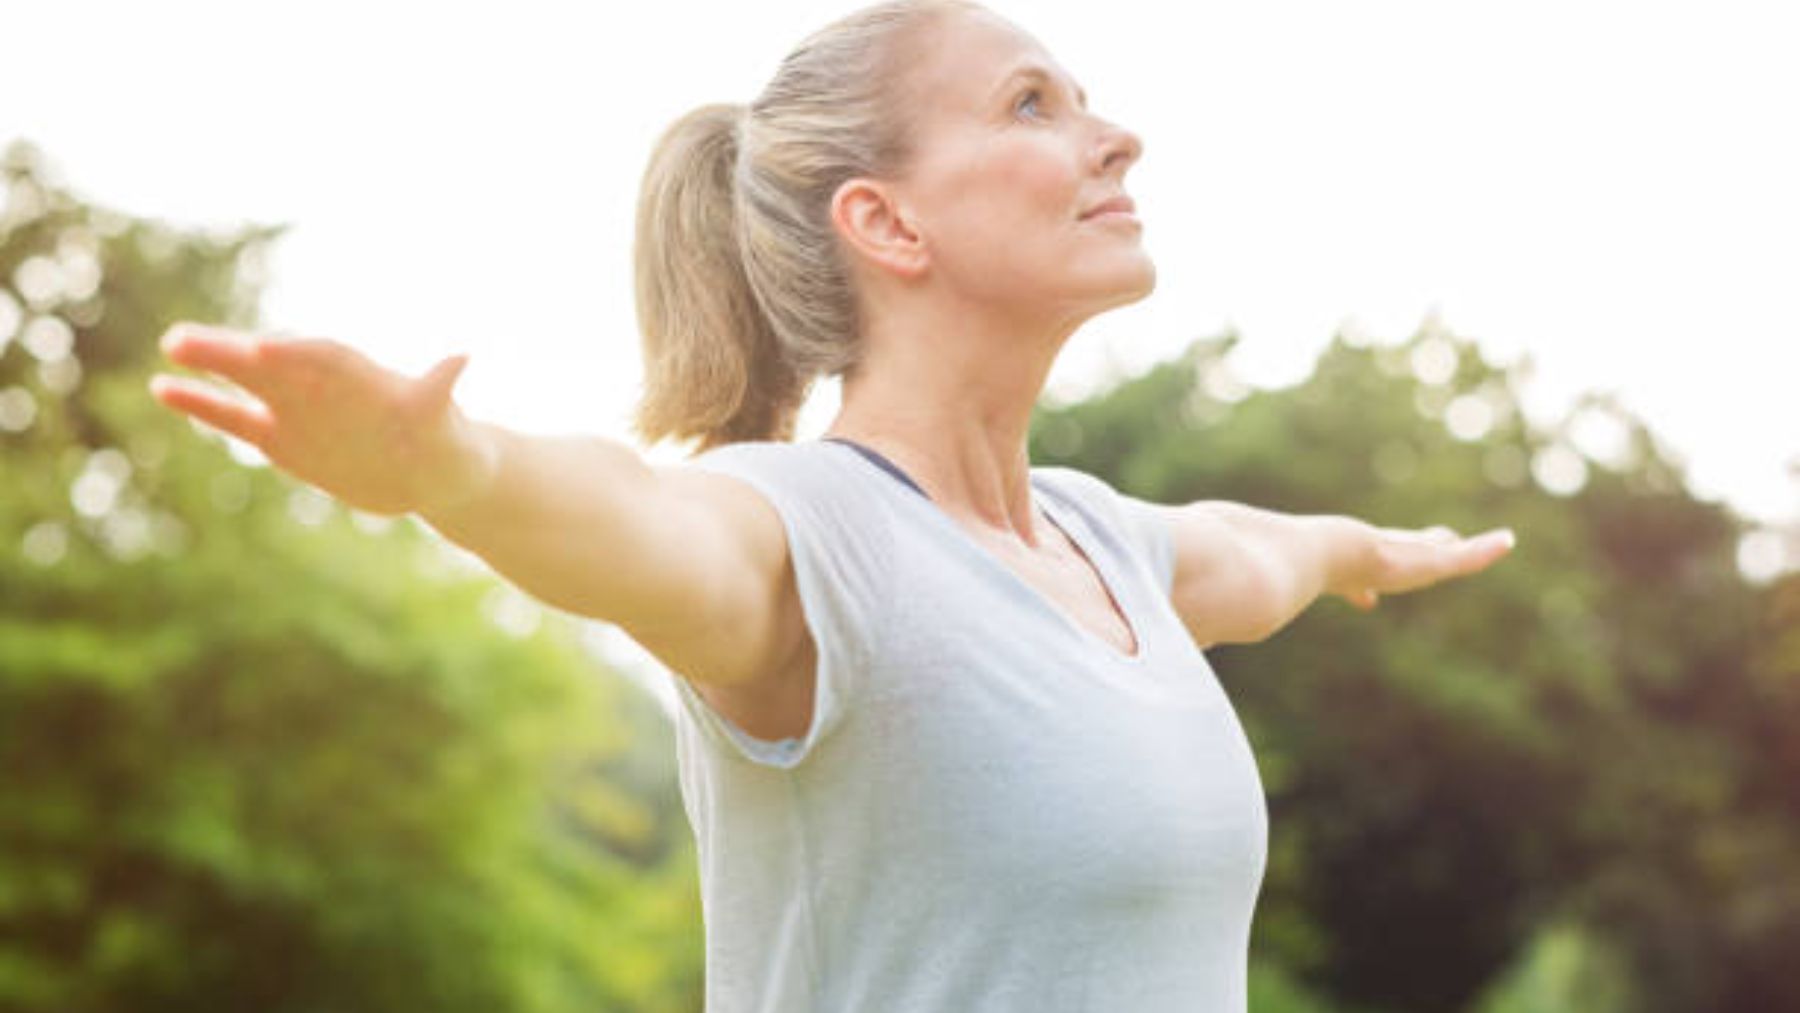 Descubre los ejercicios que son mejores para tener unos brazos tonificados